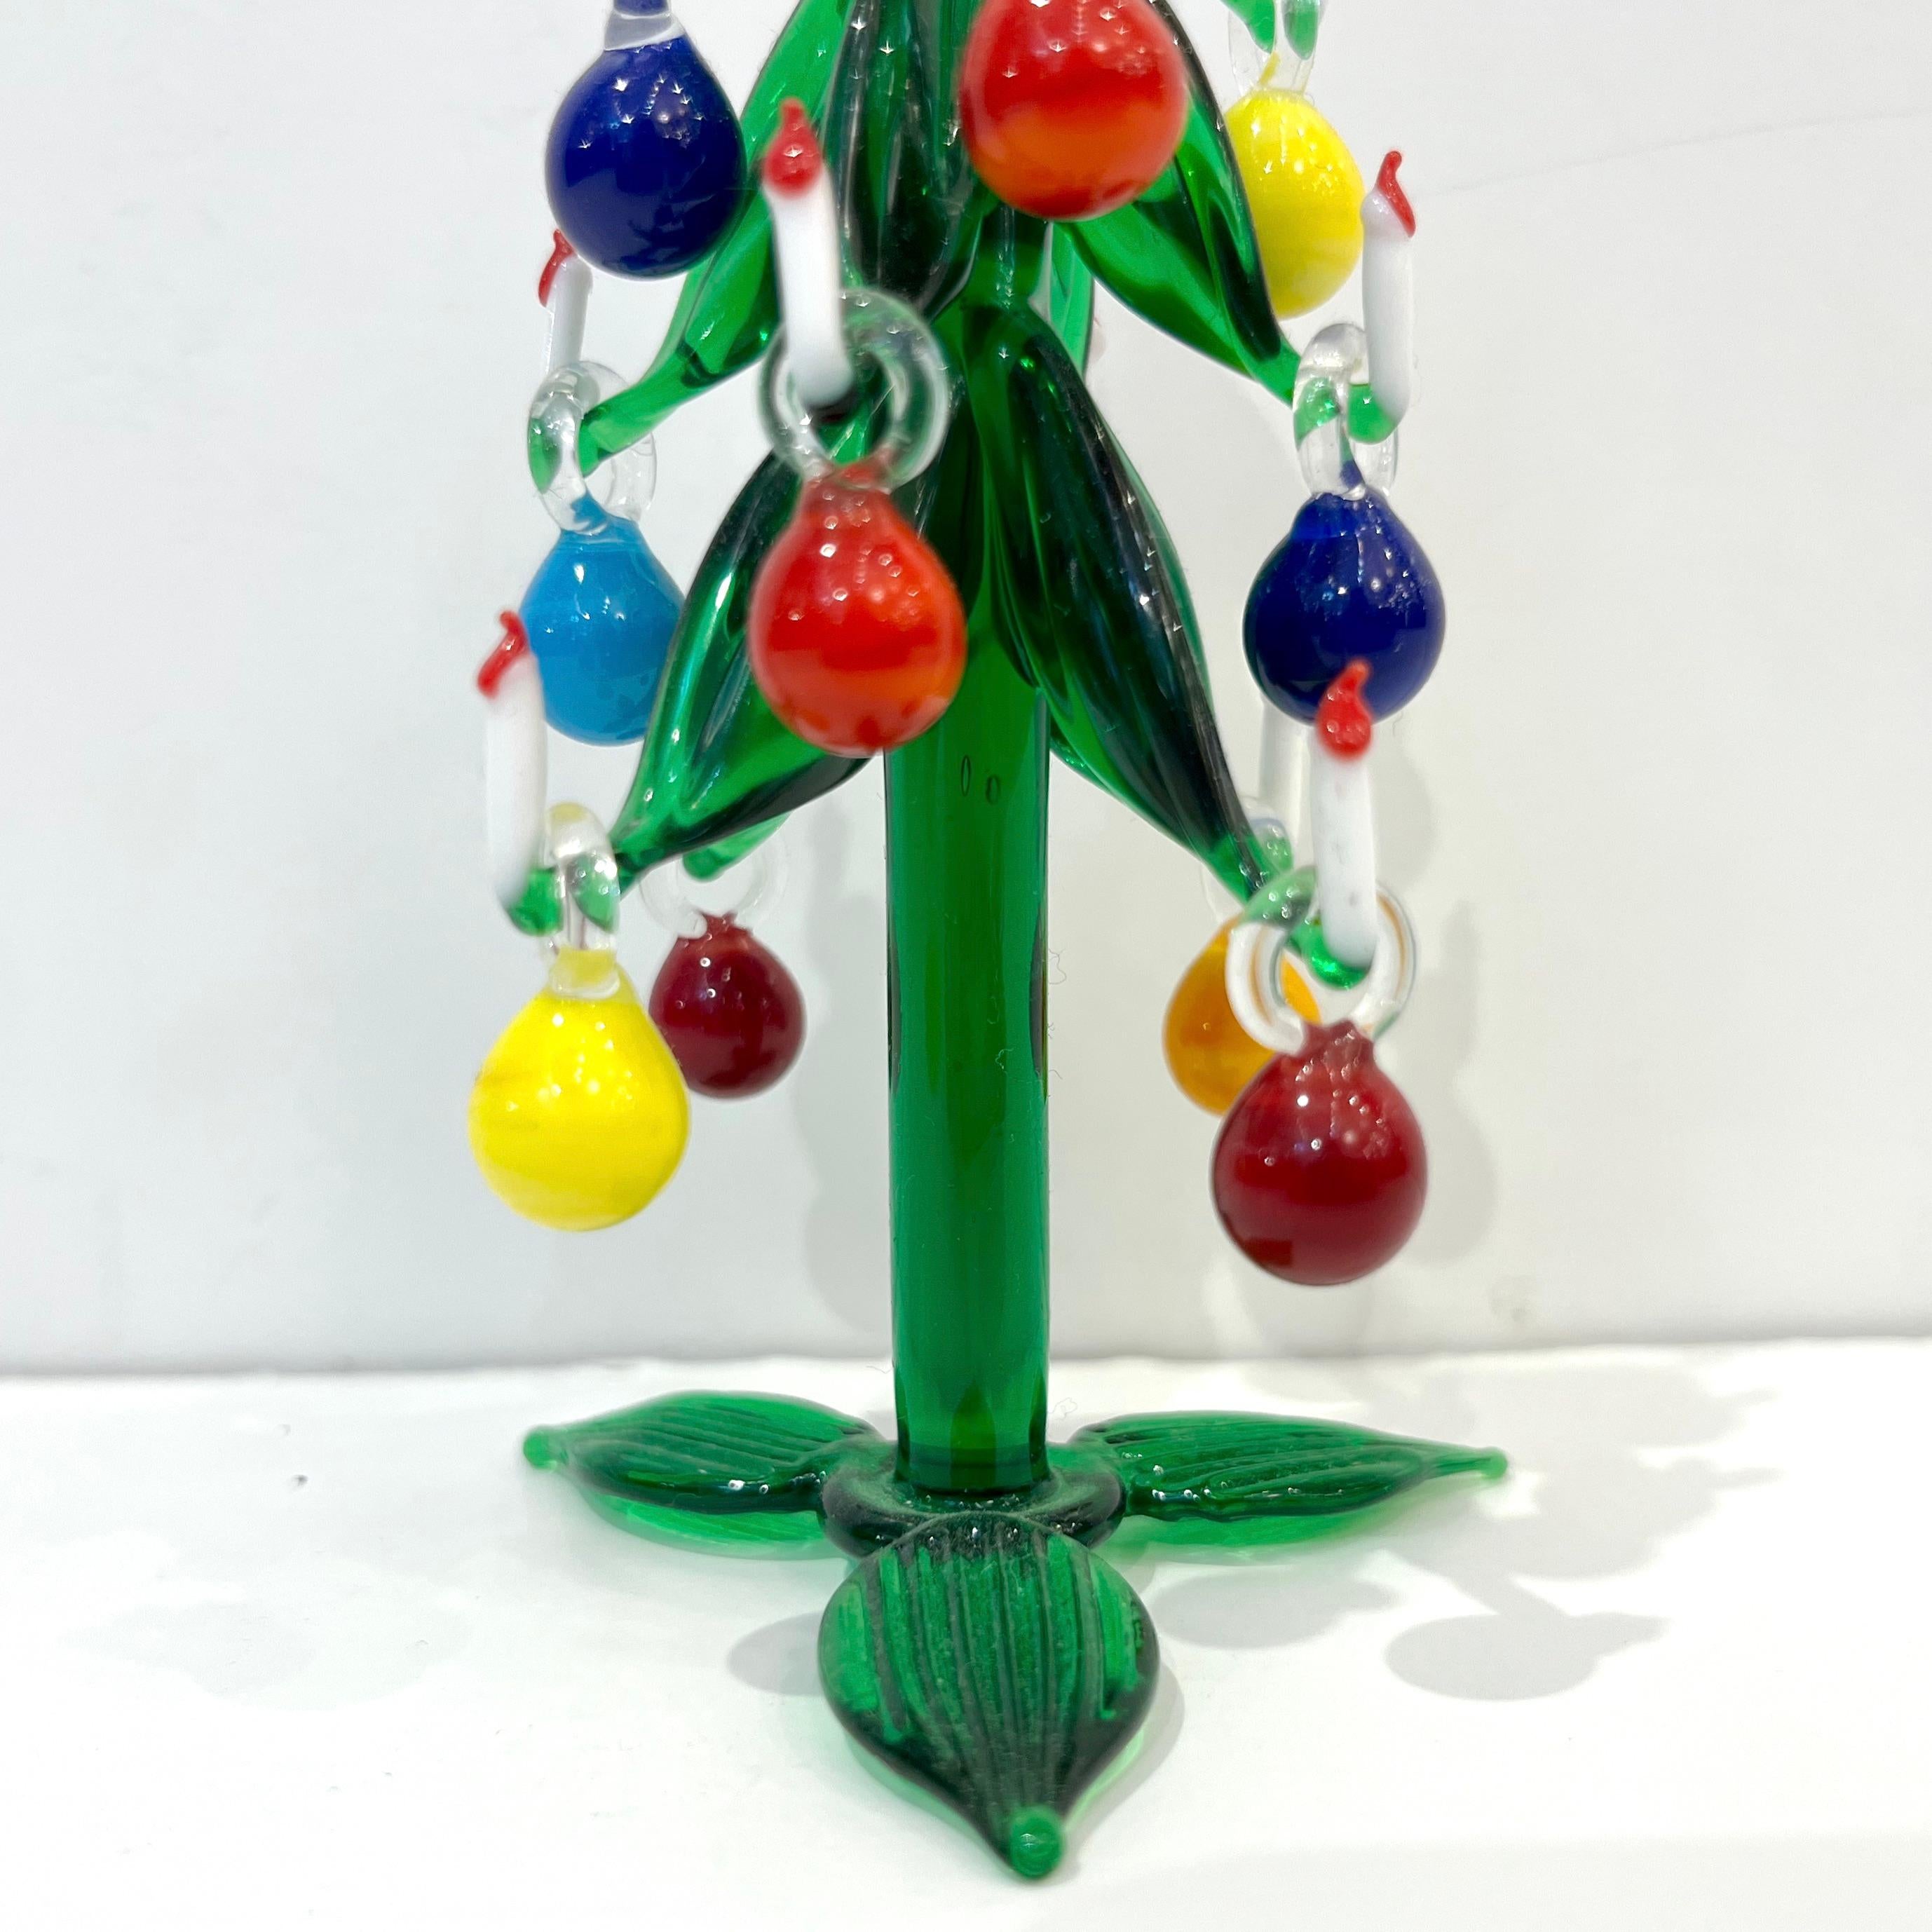 murano glass ornaments